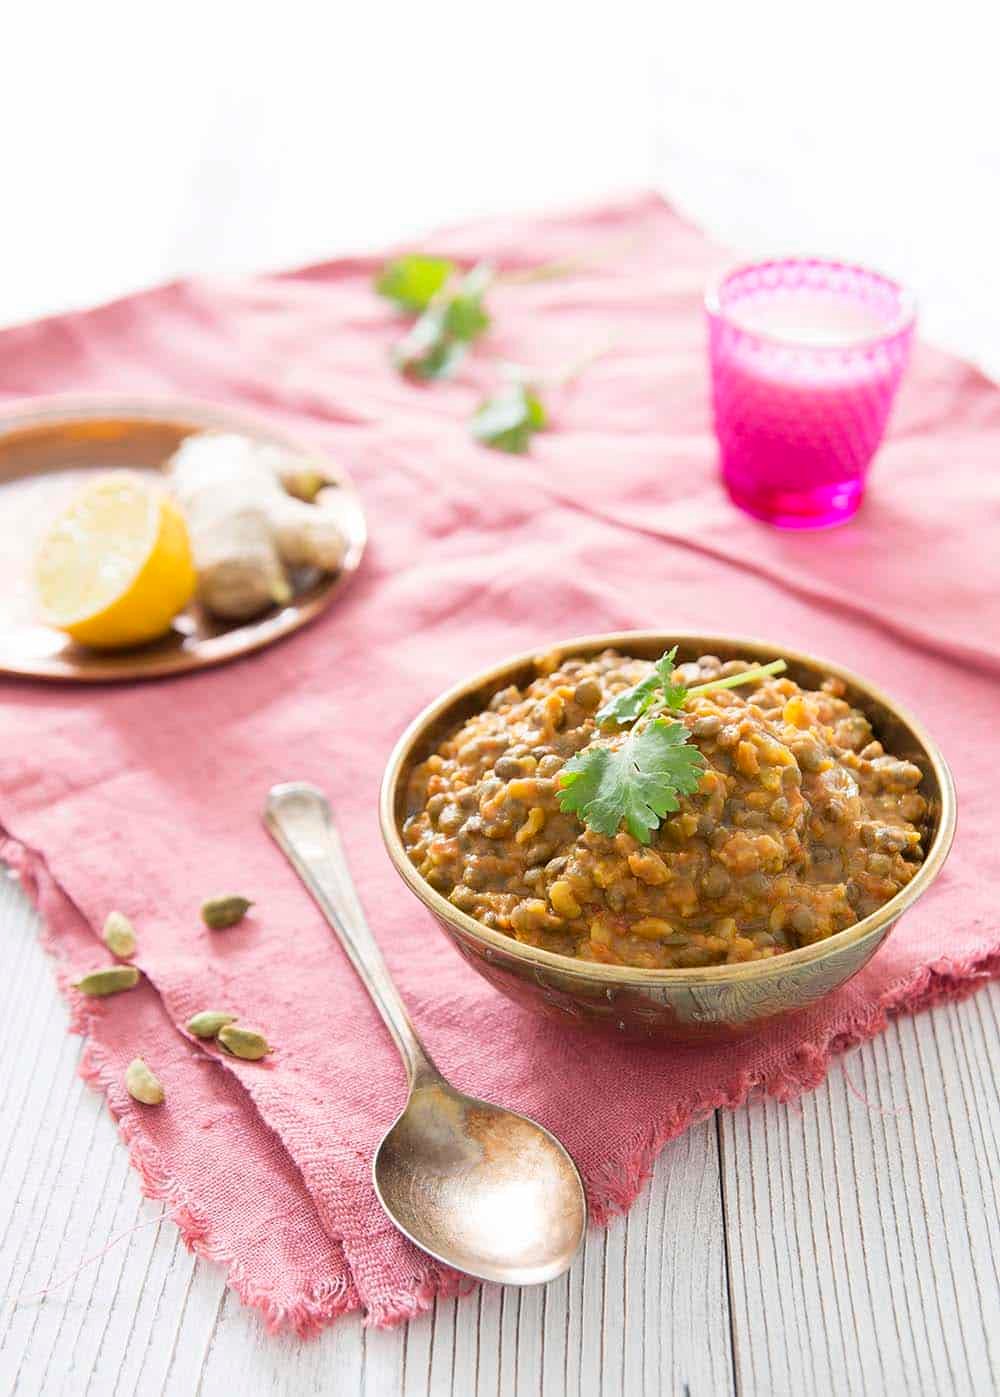 Recette haricot mungo : Curry aux pousses de haricot mungo